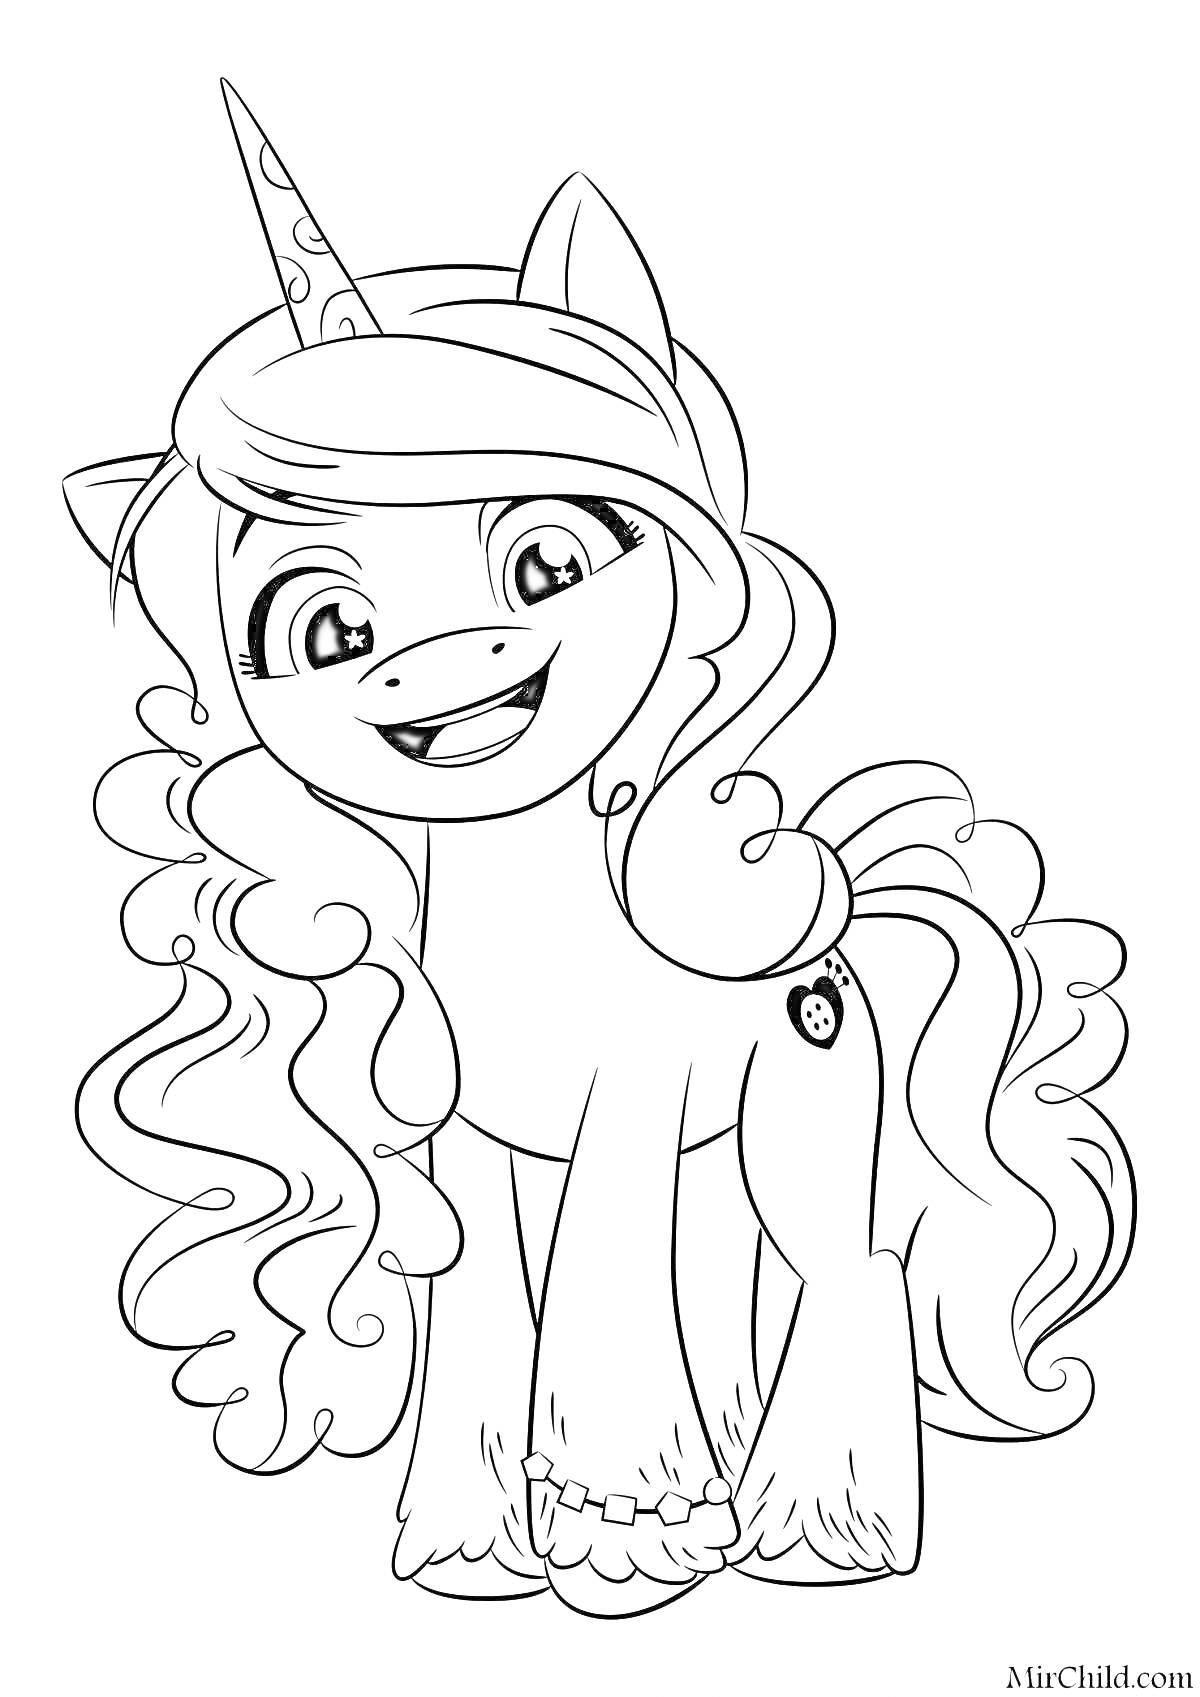 Раскраска Пони с длинными кудрявыми волосами и единорогом, улыбается, изображение с кьютимаркой в виде пуговицы